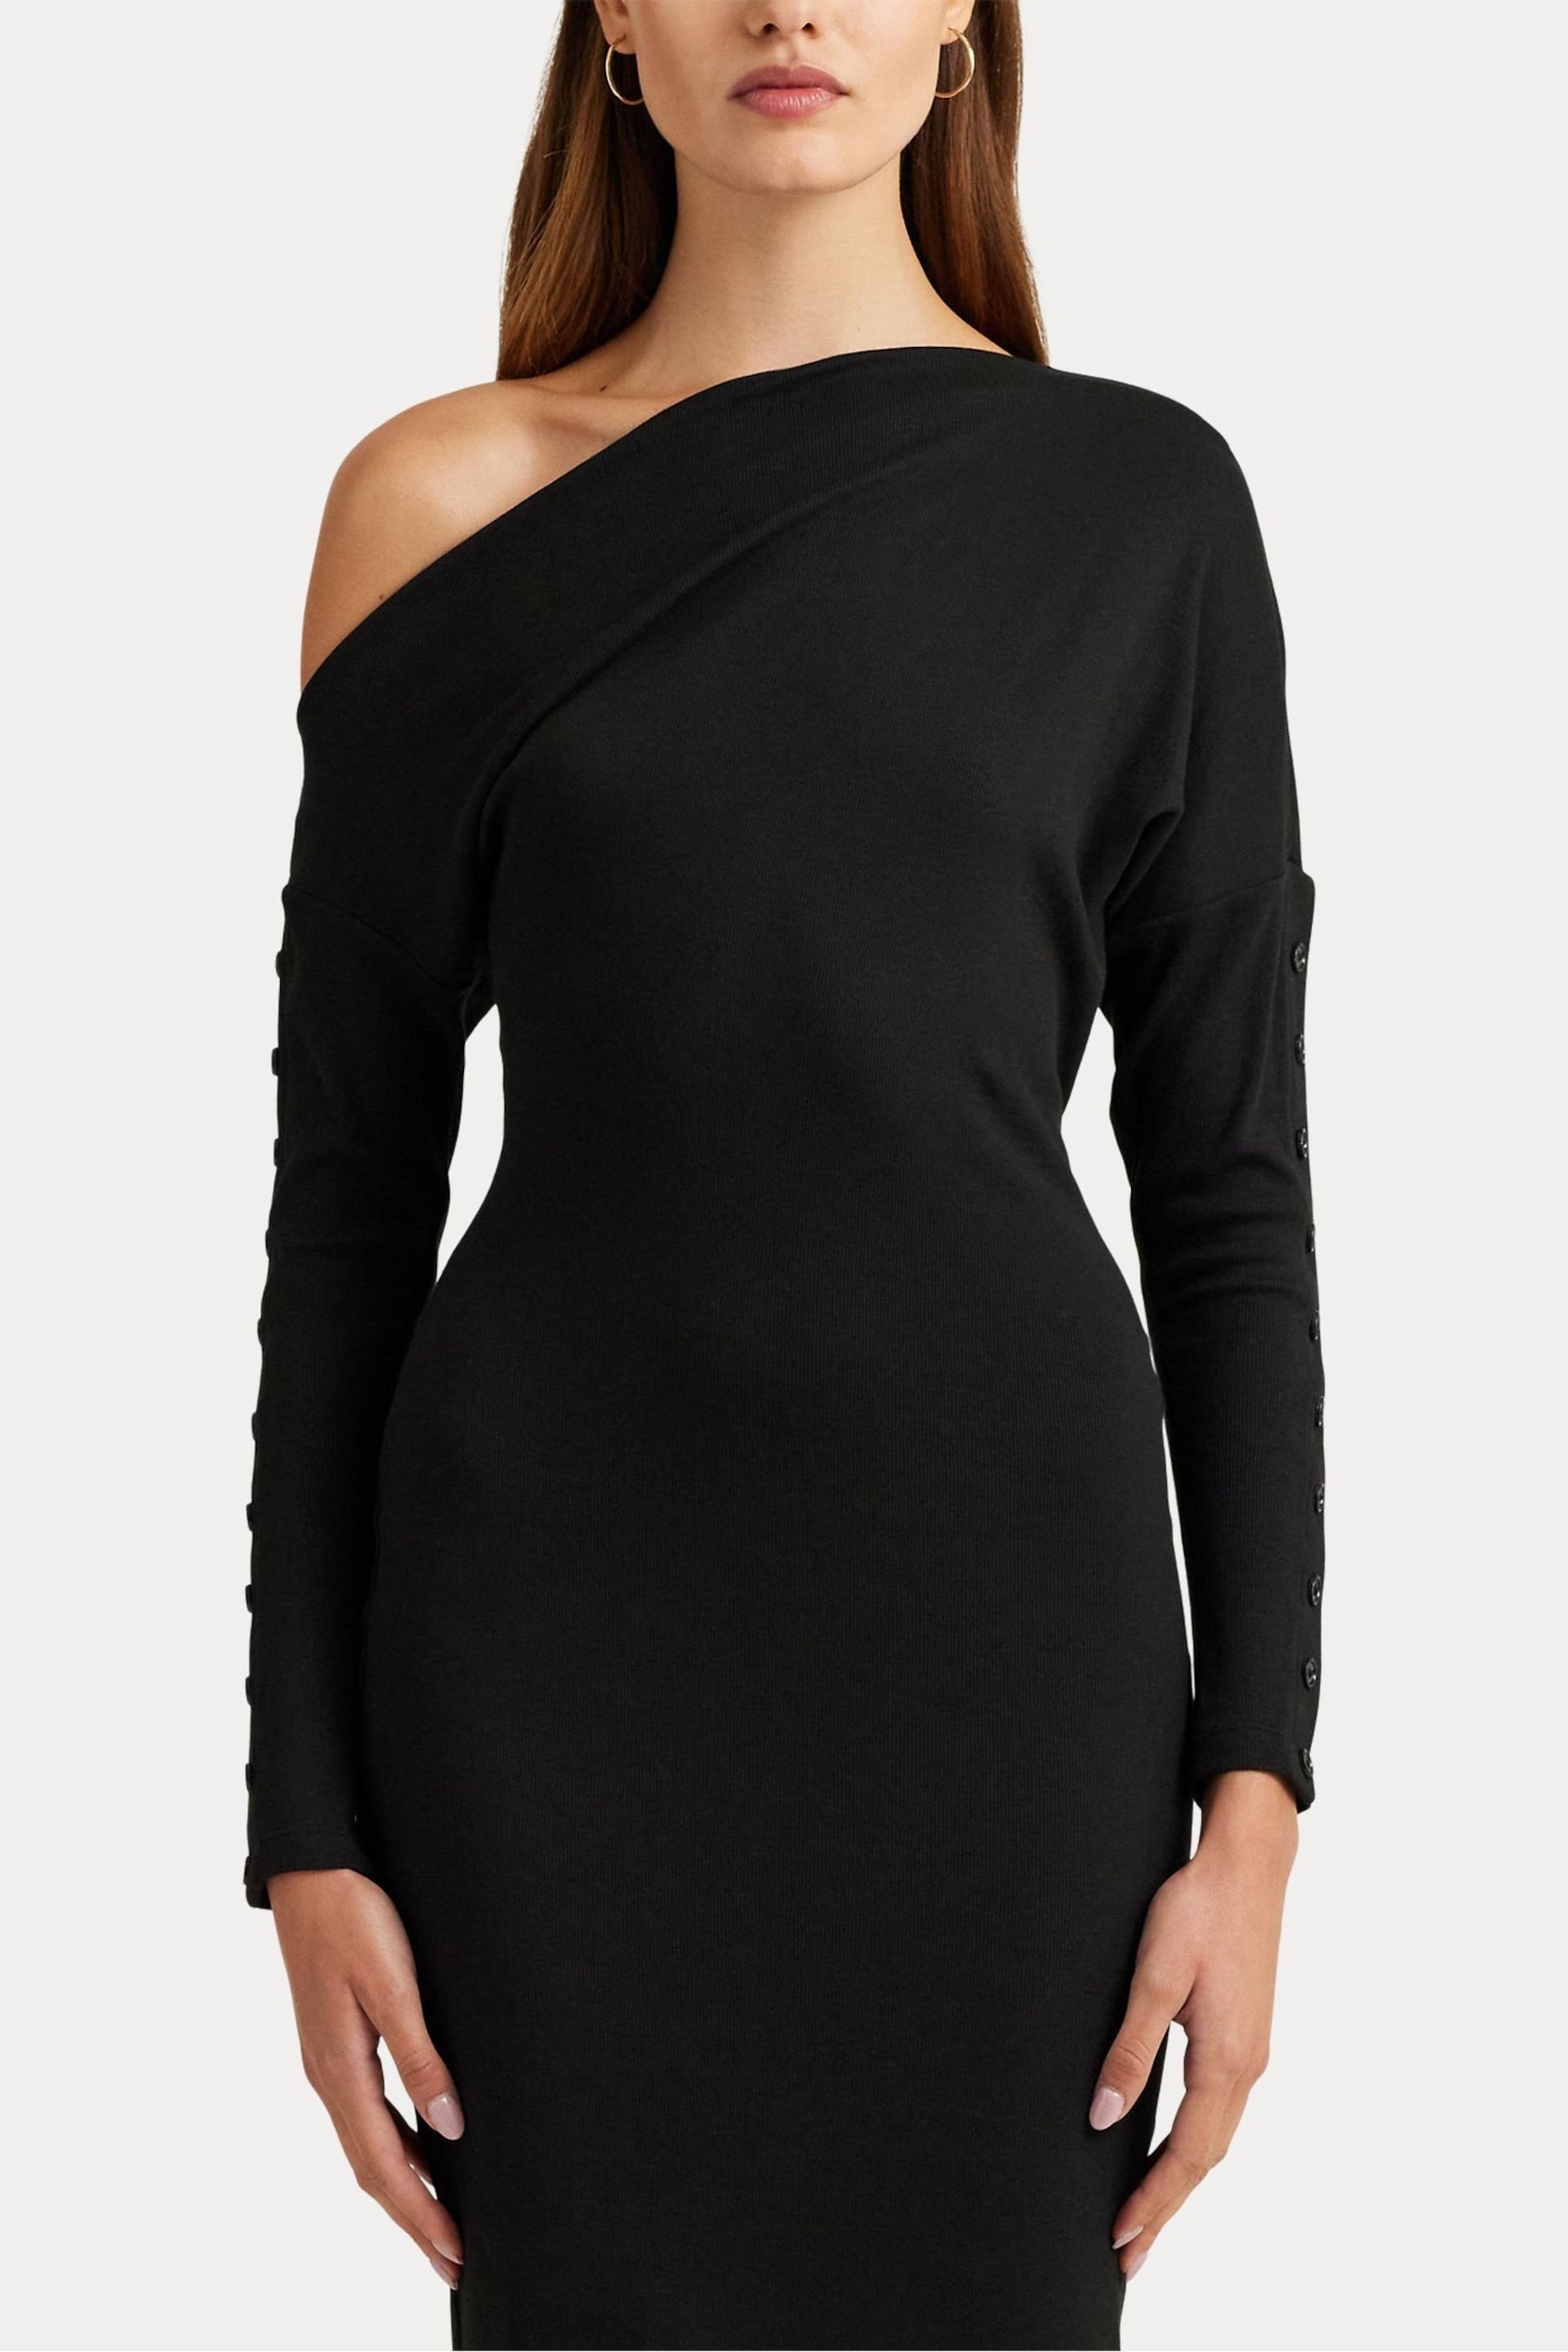 Lauren Ralph Lauren Black Yaslee Dress - Image 7 of 9